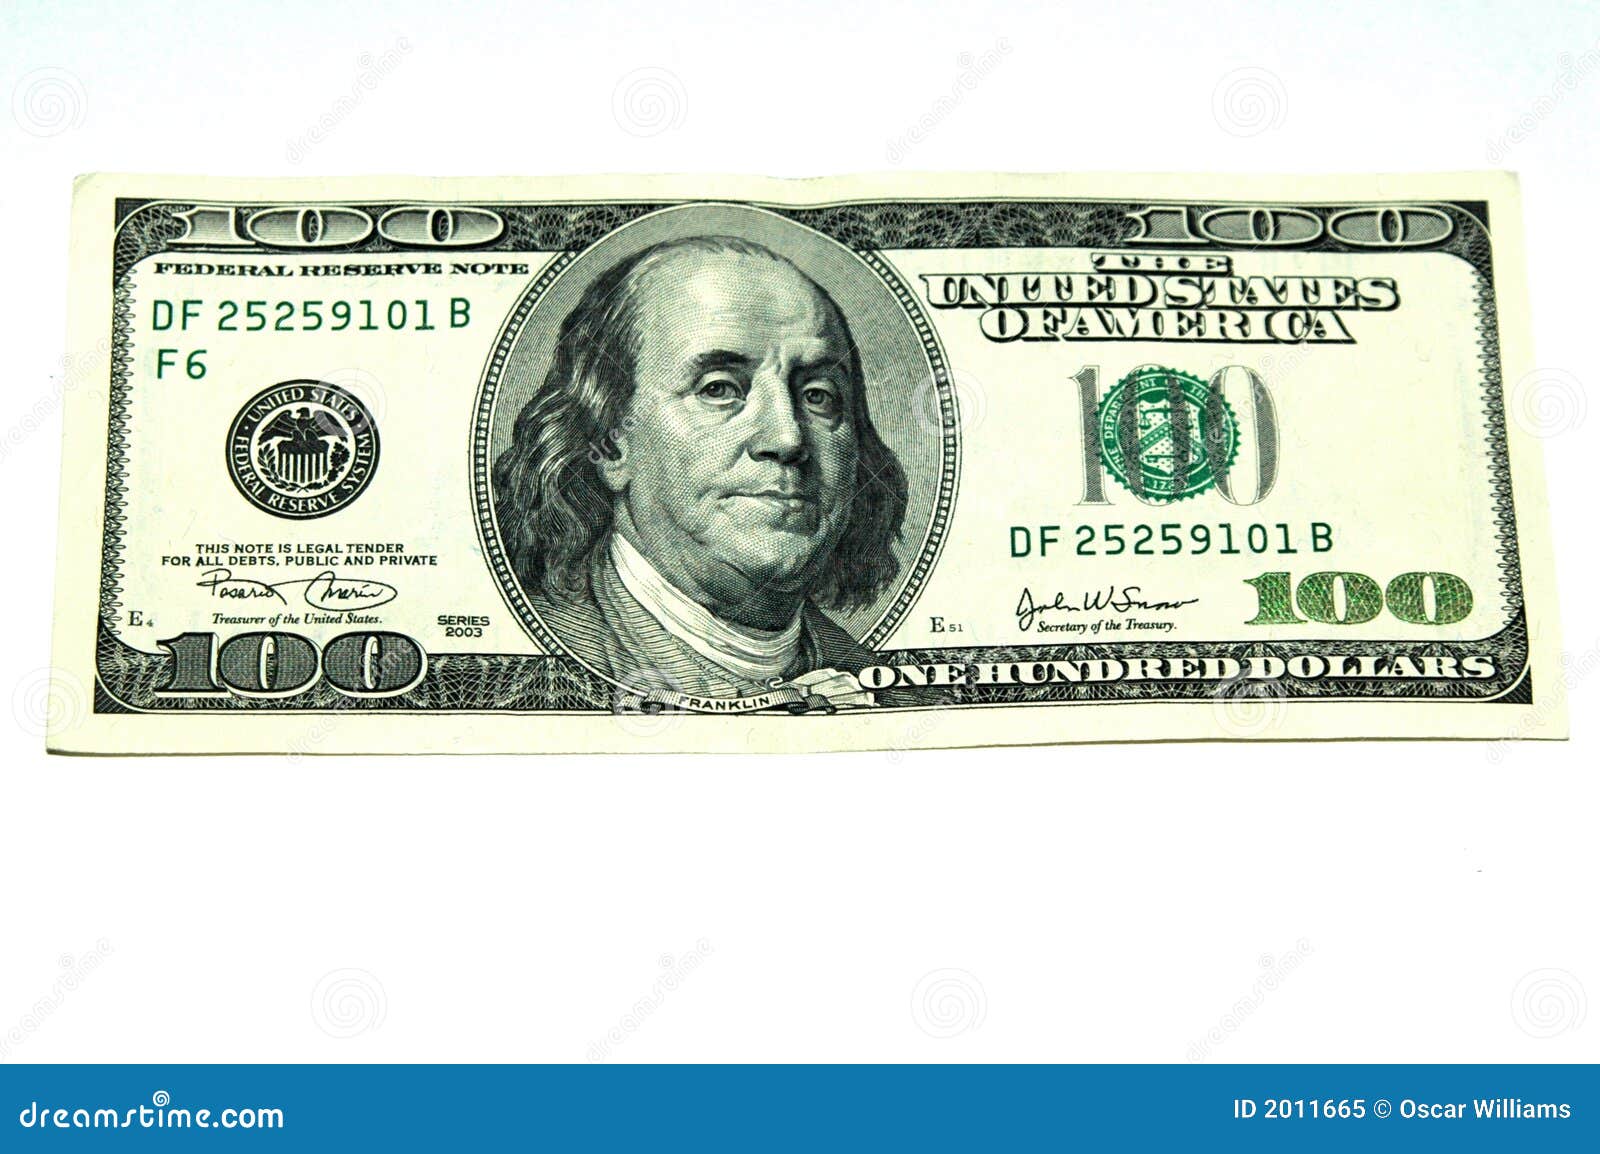 Сто долларов это сколько. 100 Долларов в рублях. 100 Долларов США В рублях. 100 Долларов и 100 рублей. 100 Долларов рисунок.